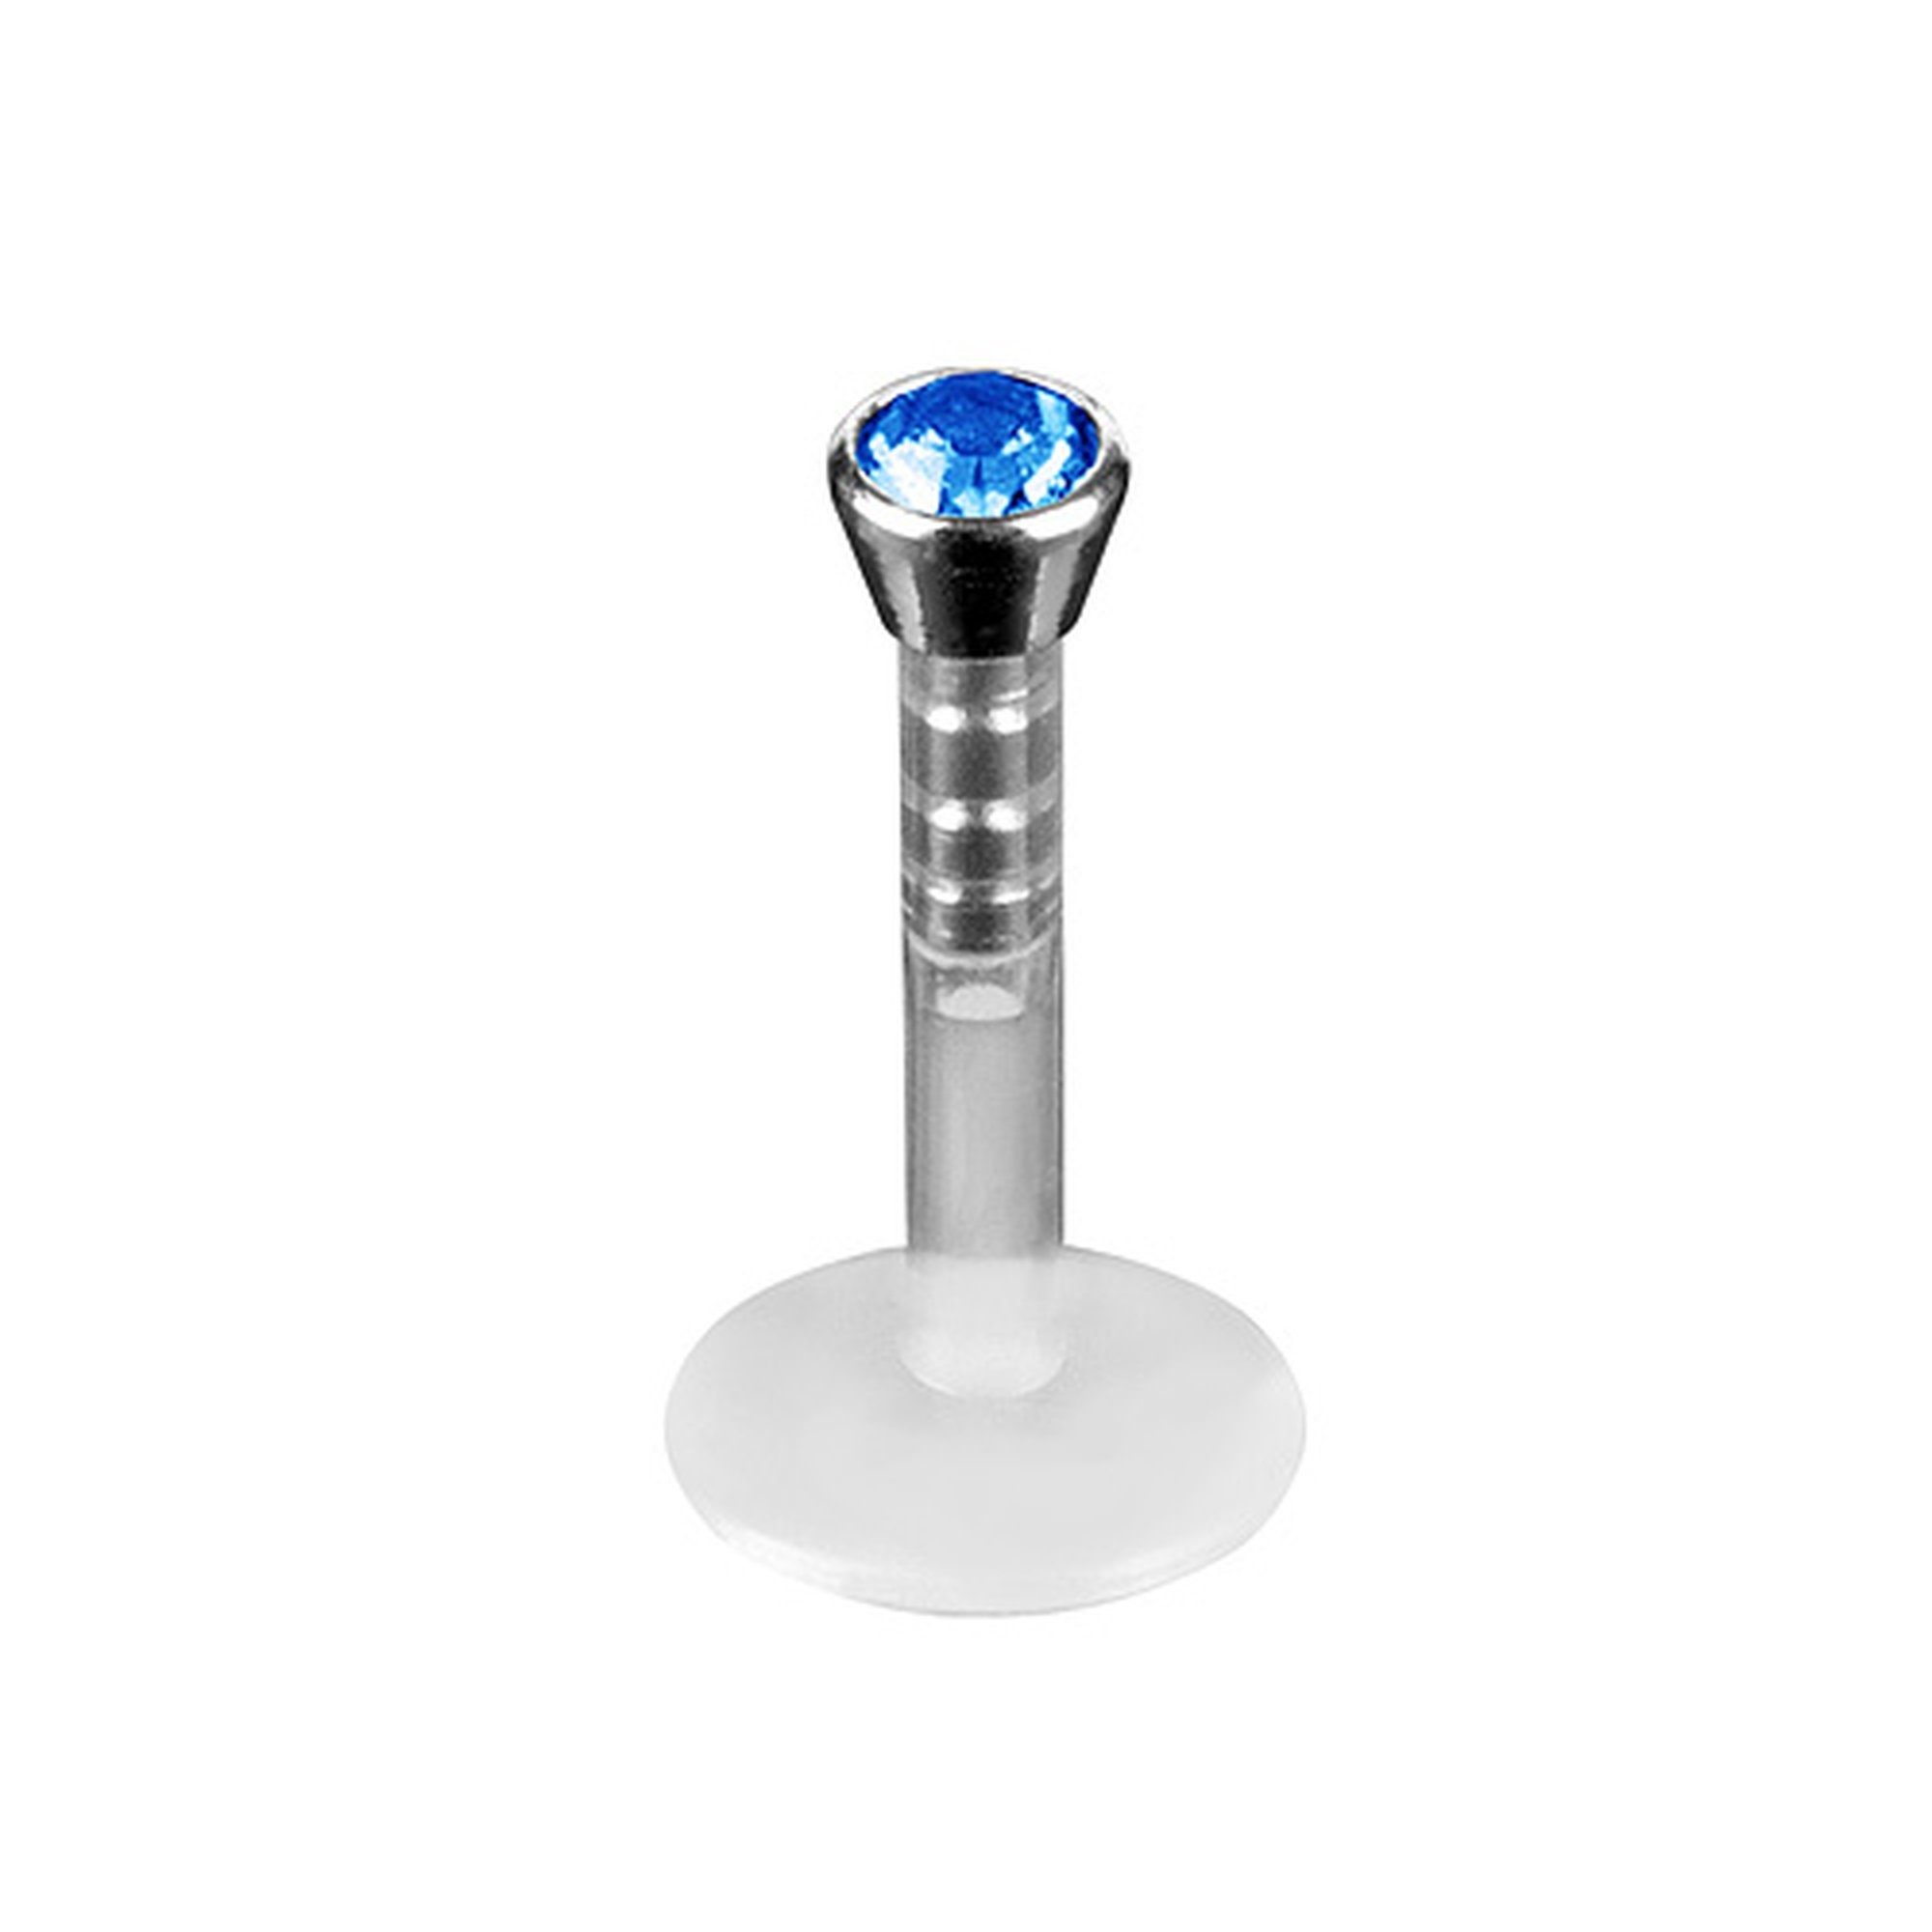 Taffstyle Piercing-Set Piercing Bioflex mit Schmuck Stecker Labret Piercing Stecker Bioflex Blau Kristall, Lippenstecker Lippenpiercing Labret